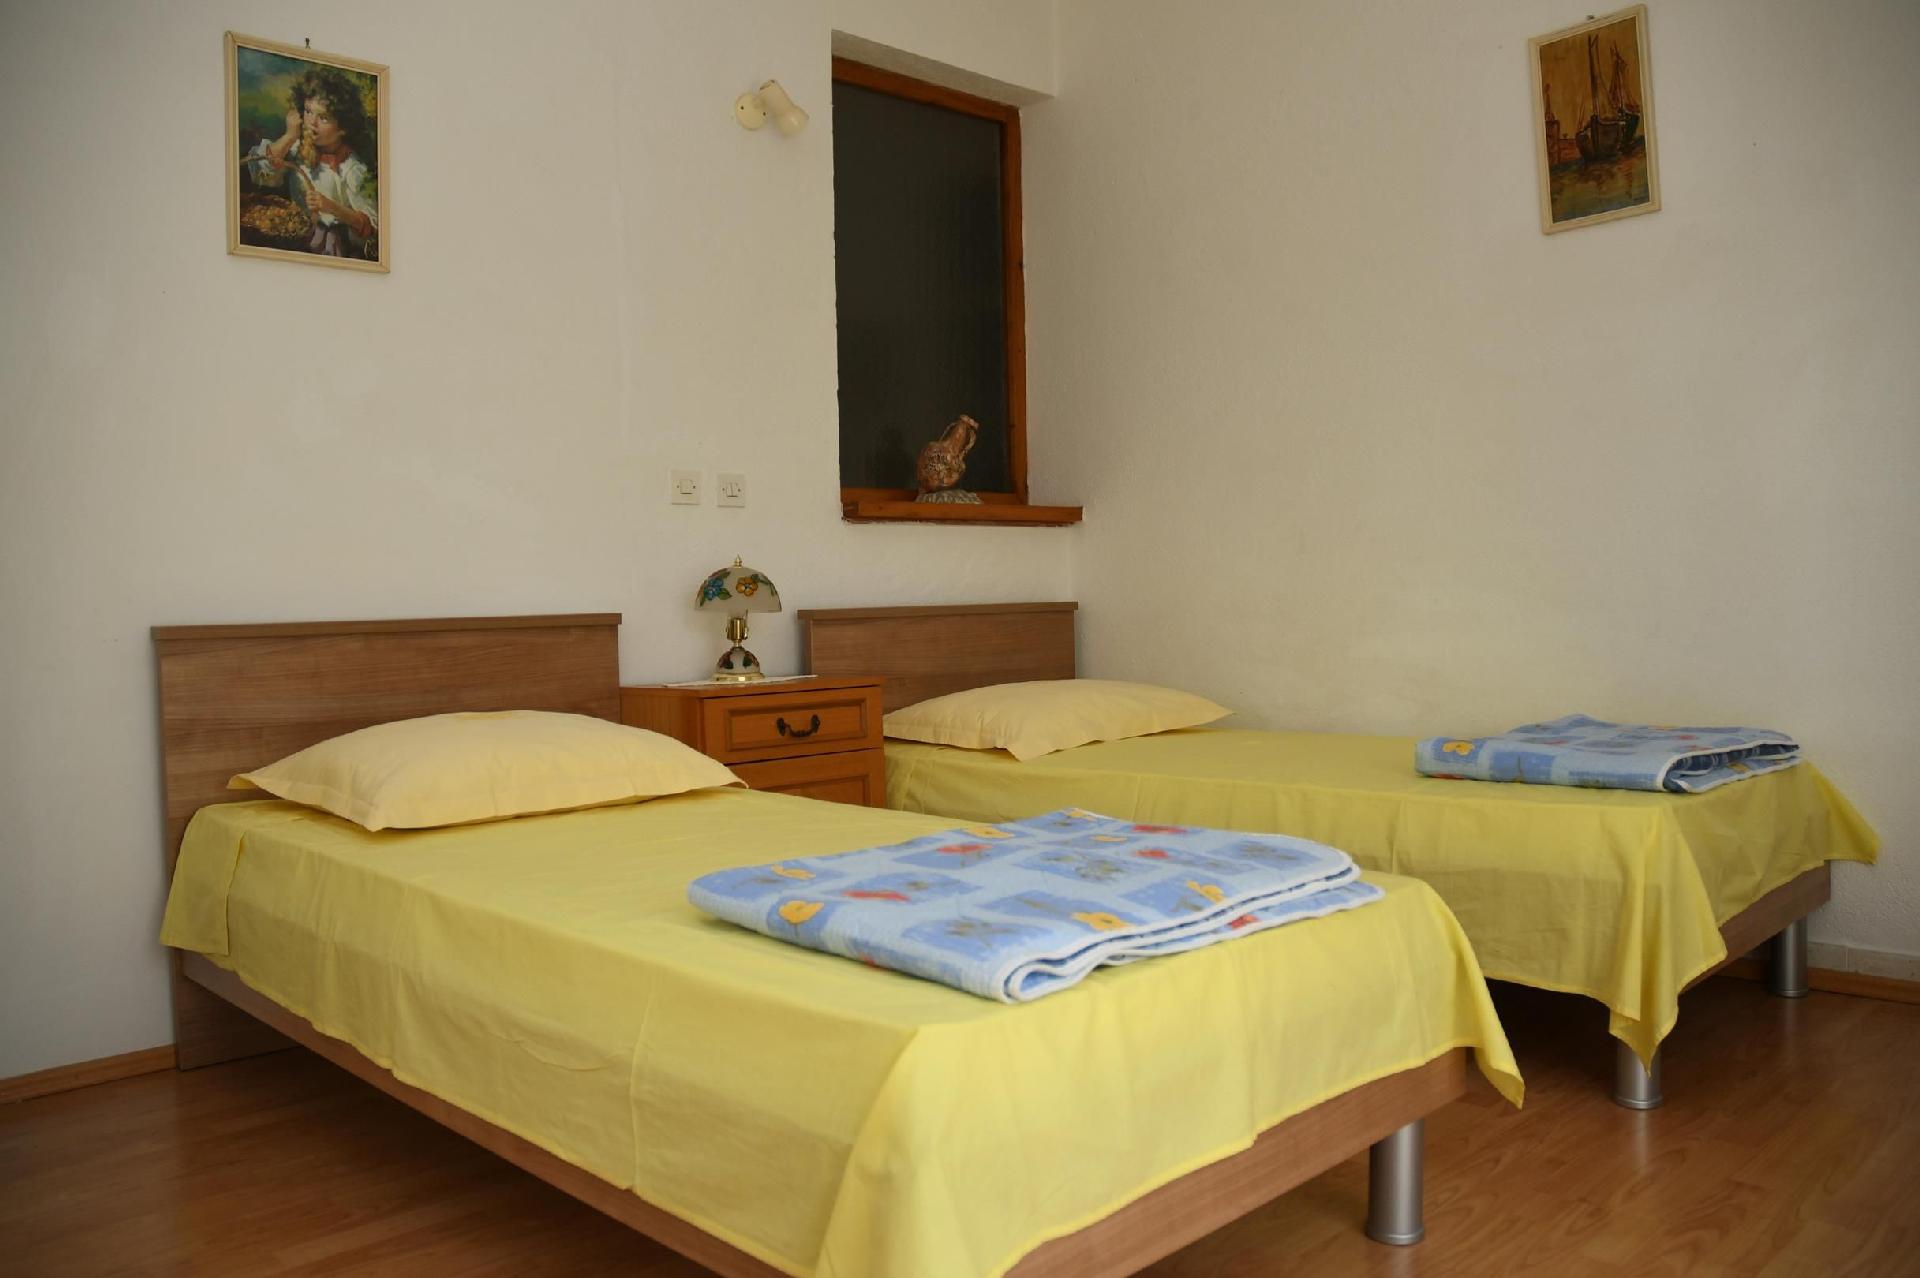 Große Wohnung in Podstrana mit Terrasse, Gar Ferienhaus in Dalmatien